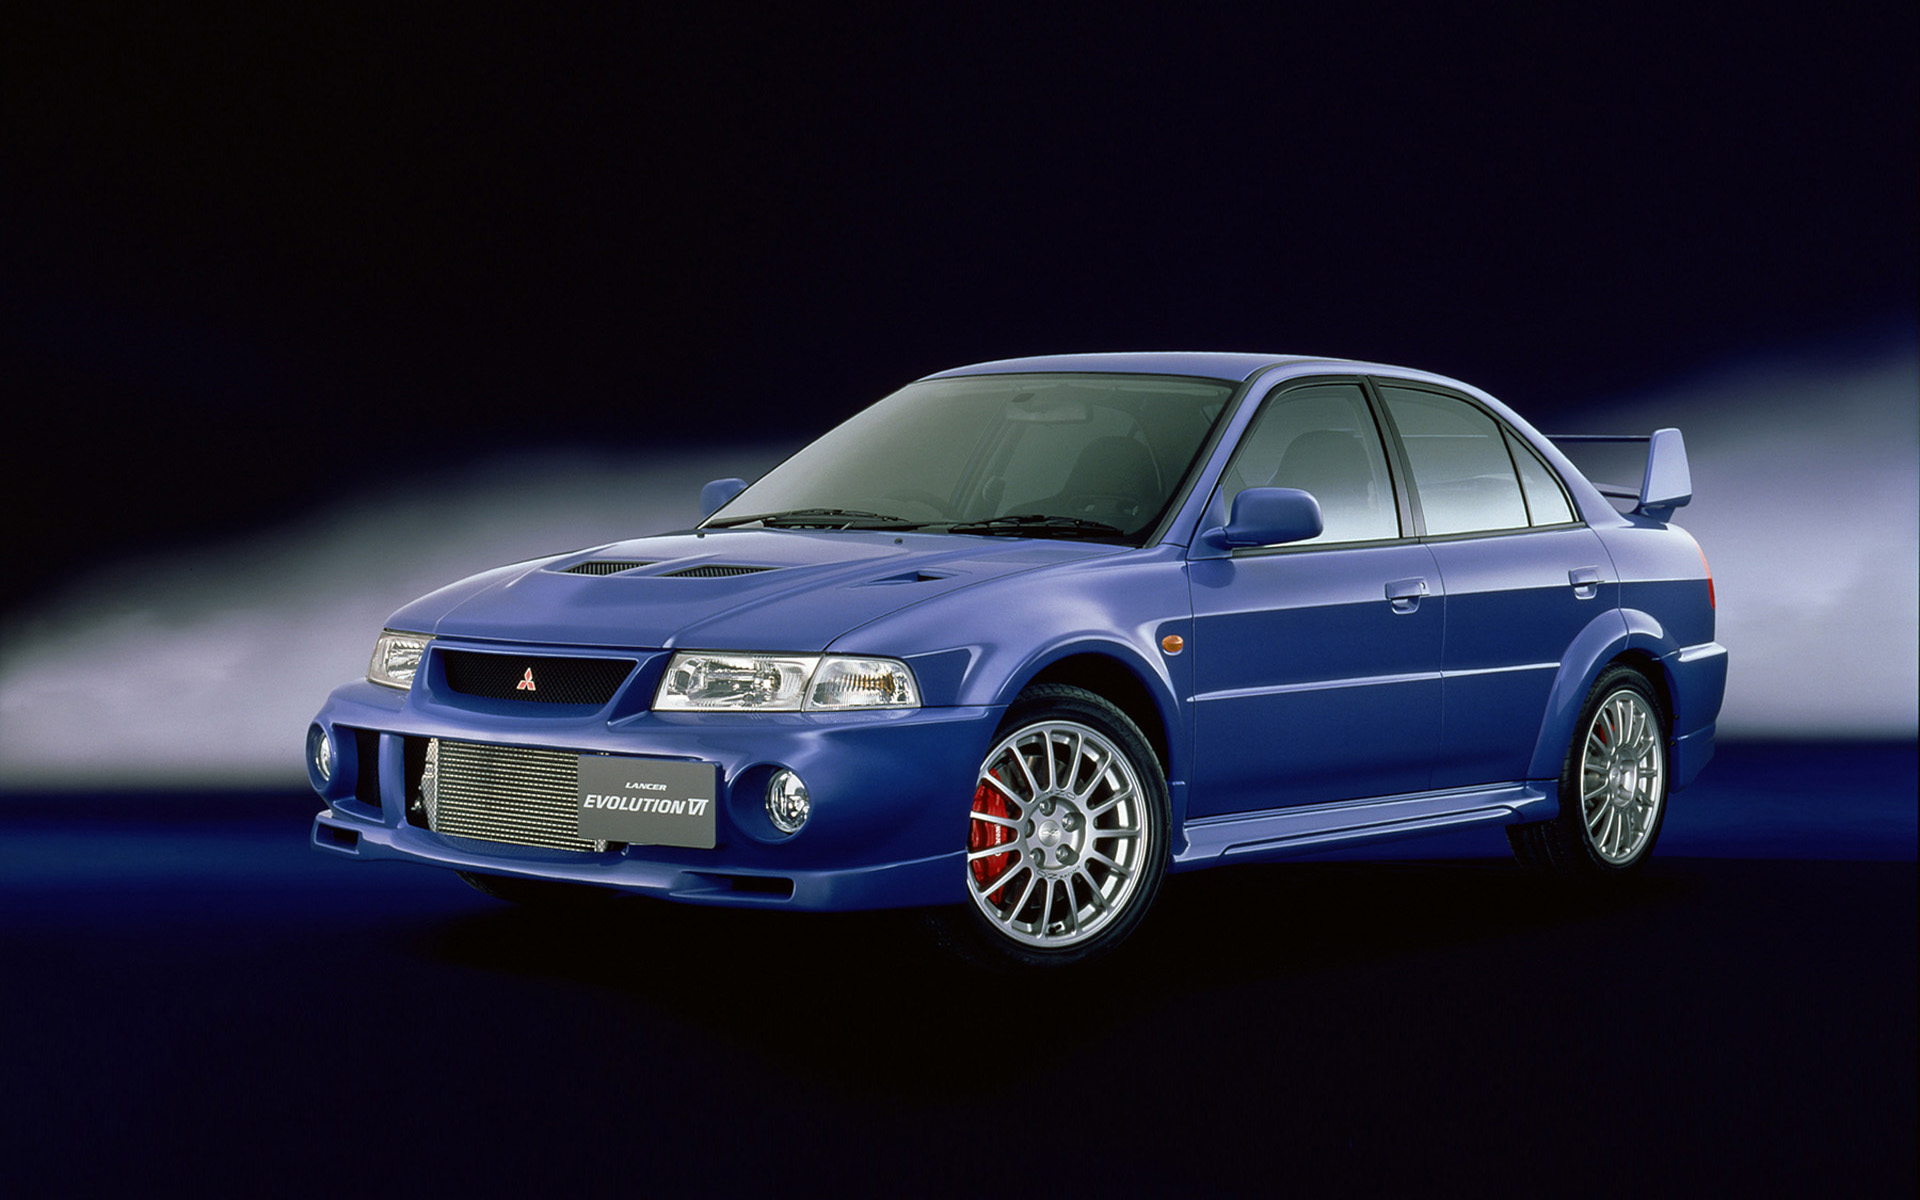  1999 Mitsubishi Lancer GSR Evolution VI Wallpaper.